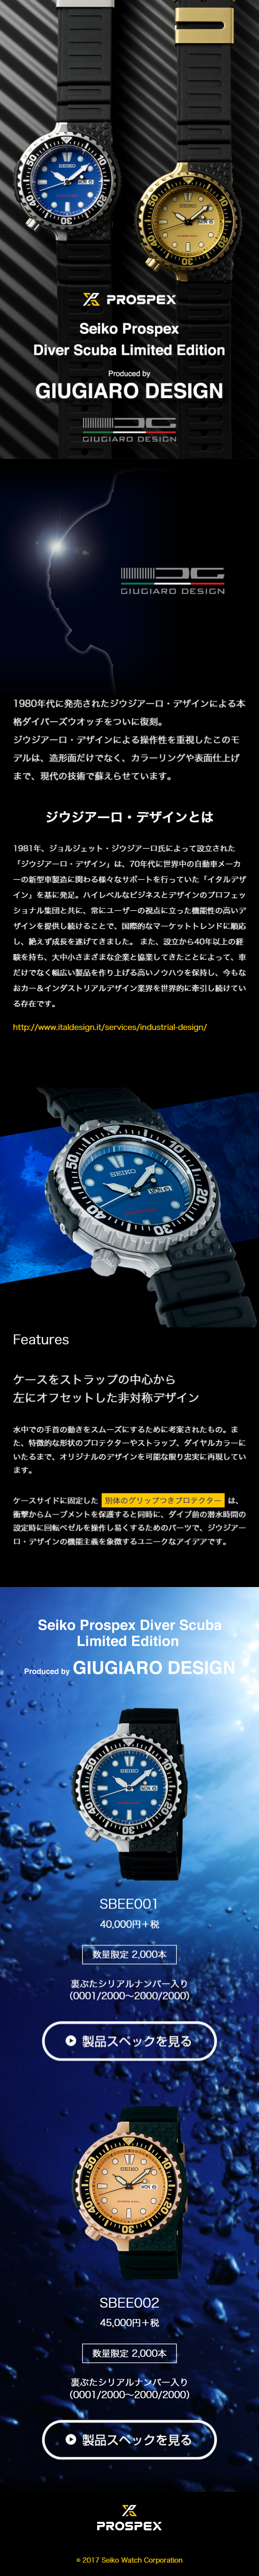 Seiko Prospex Diver Scuba Limited Edition_sp_1